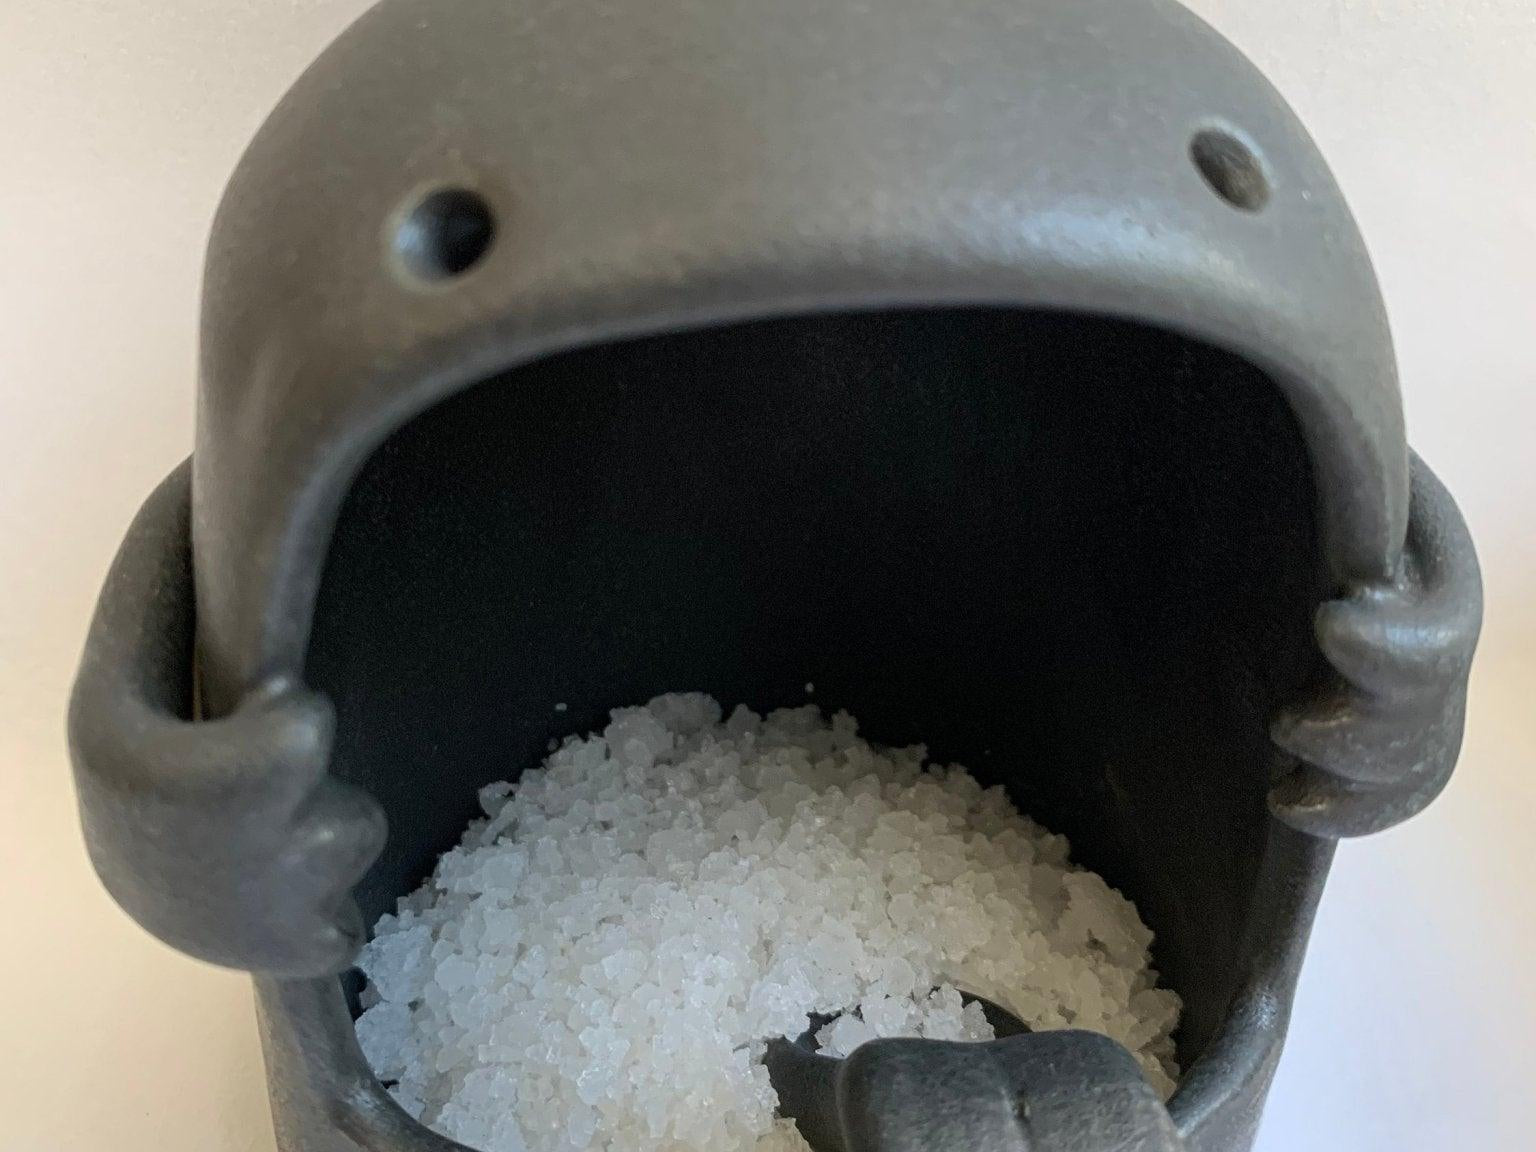 Ceramic Salt Monster Salt Cellar Simon Salt Container - MuddyHeartMuddyHeartsalt pig